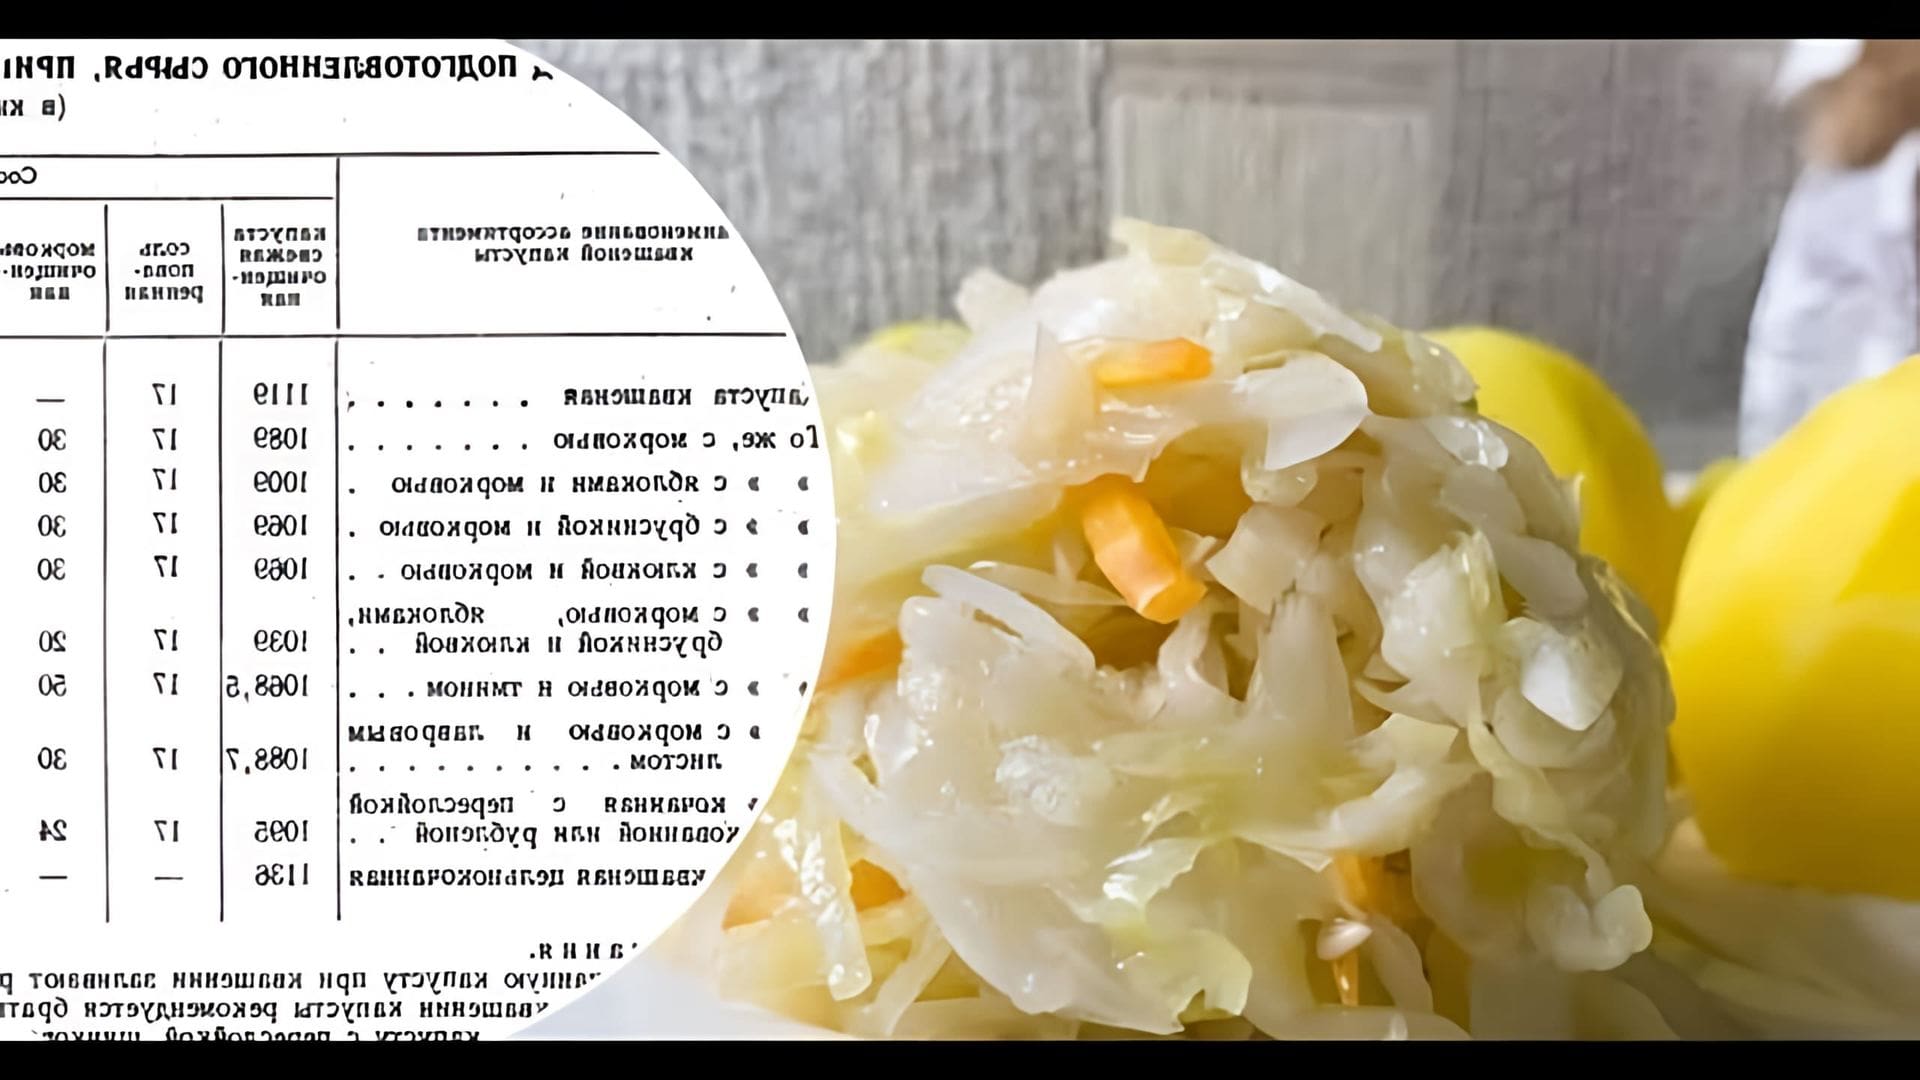 В этом видео рассказывается о том, как приготовить квашеную капусту по ГОСТу СССР, рецепт которой был разработан в 1956 году